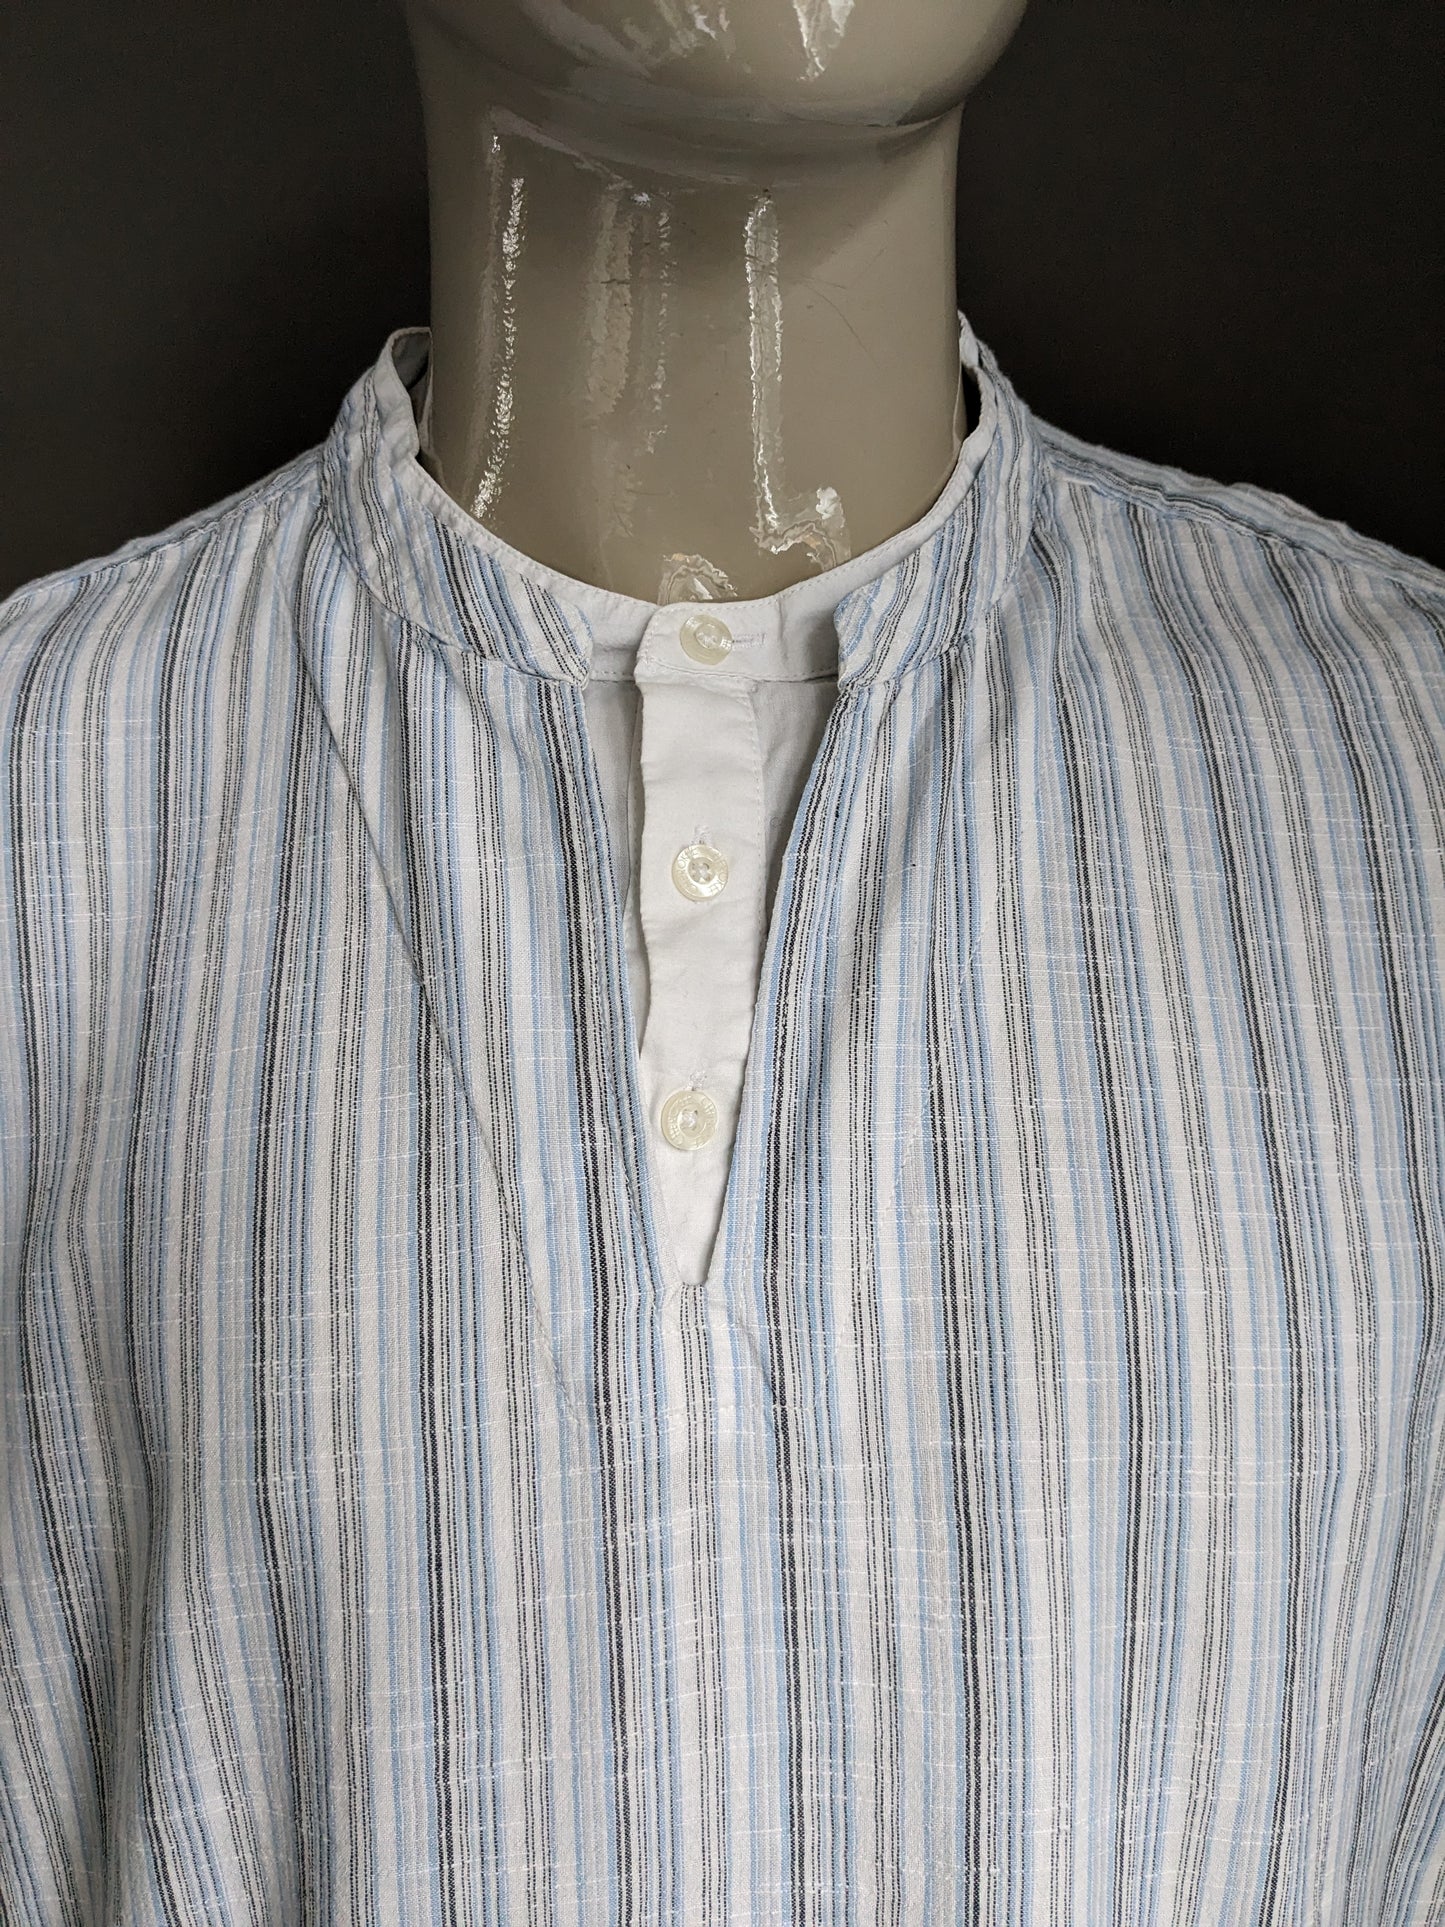 Vintage Cherokee -Hemd / Hemd mit Mao / Angehobener Kragen. Blau weiß grau gestreift. Größe xl.